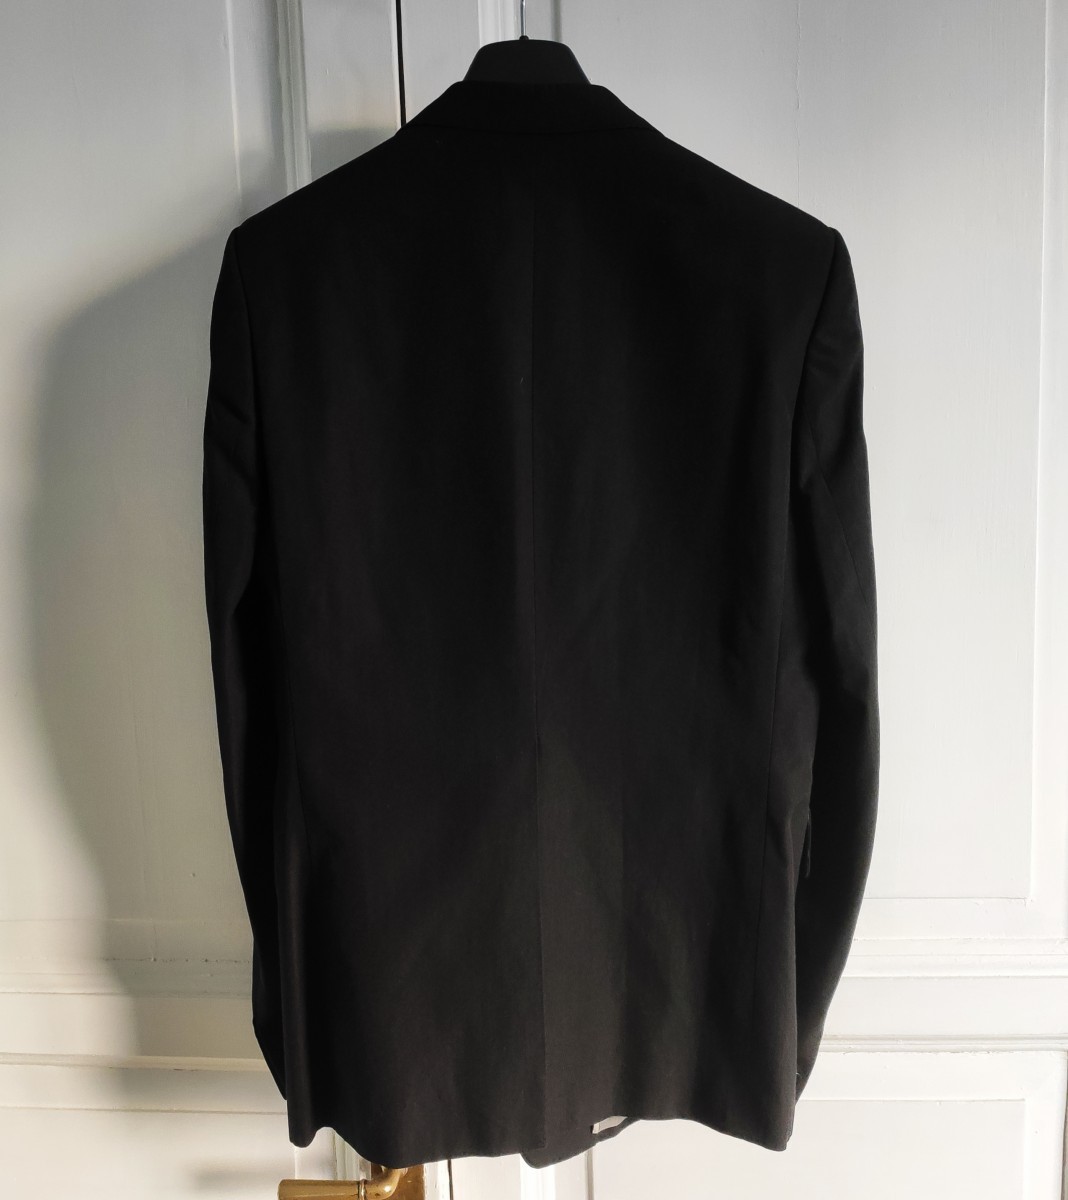 NEW! GRAIL! Black hidden button blazer from FALL '06/'07 - 3